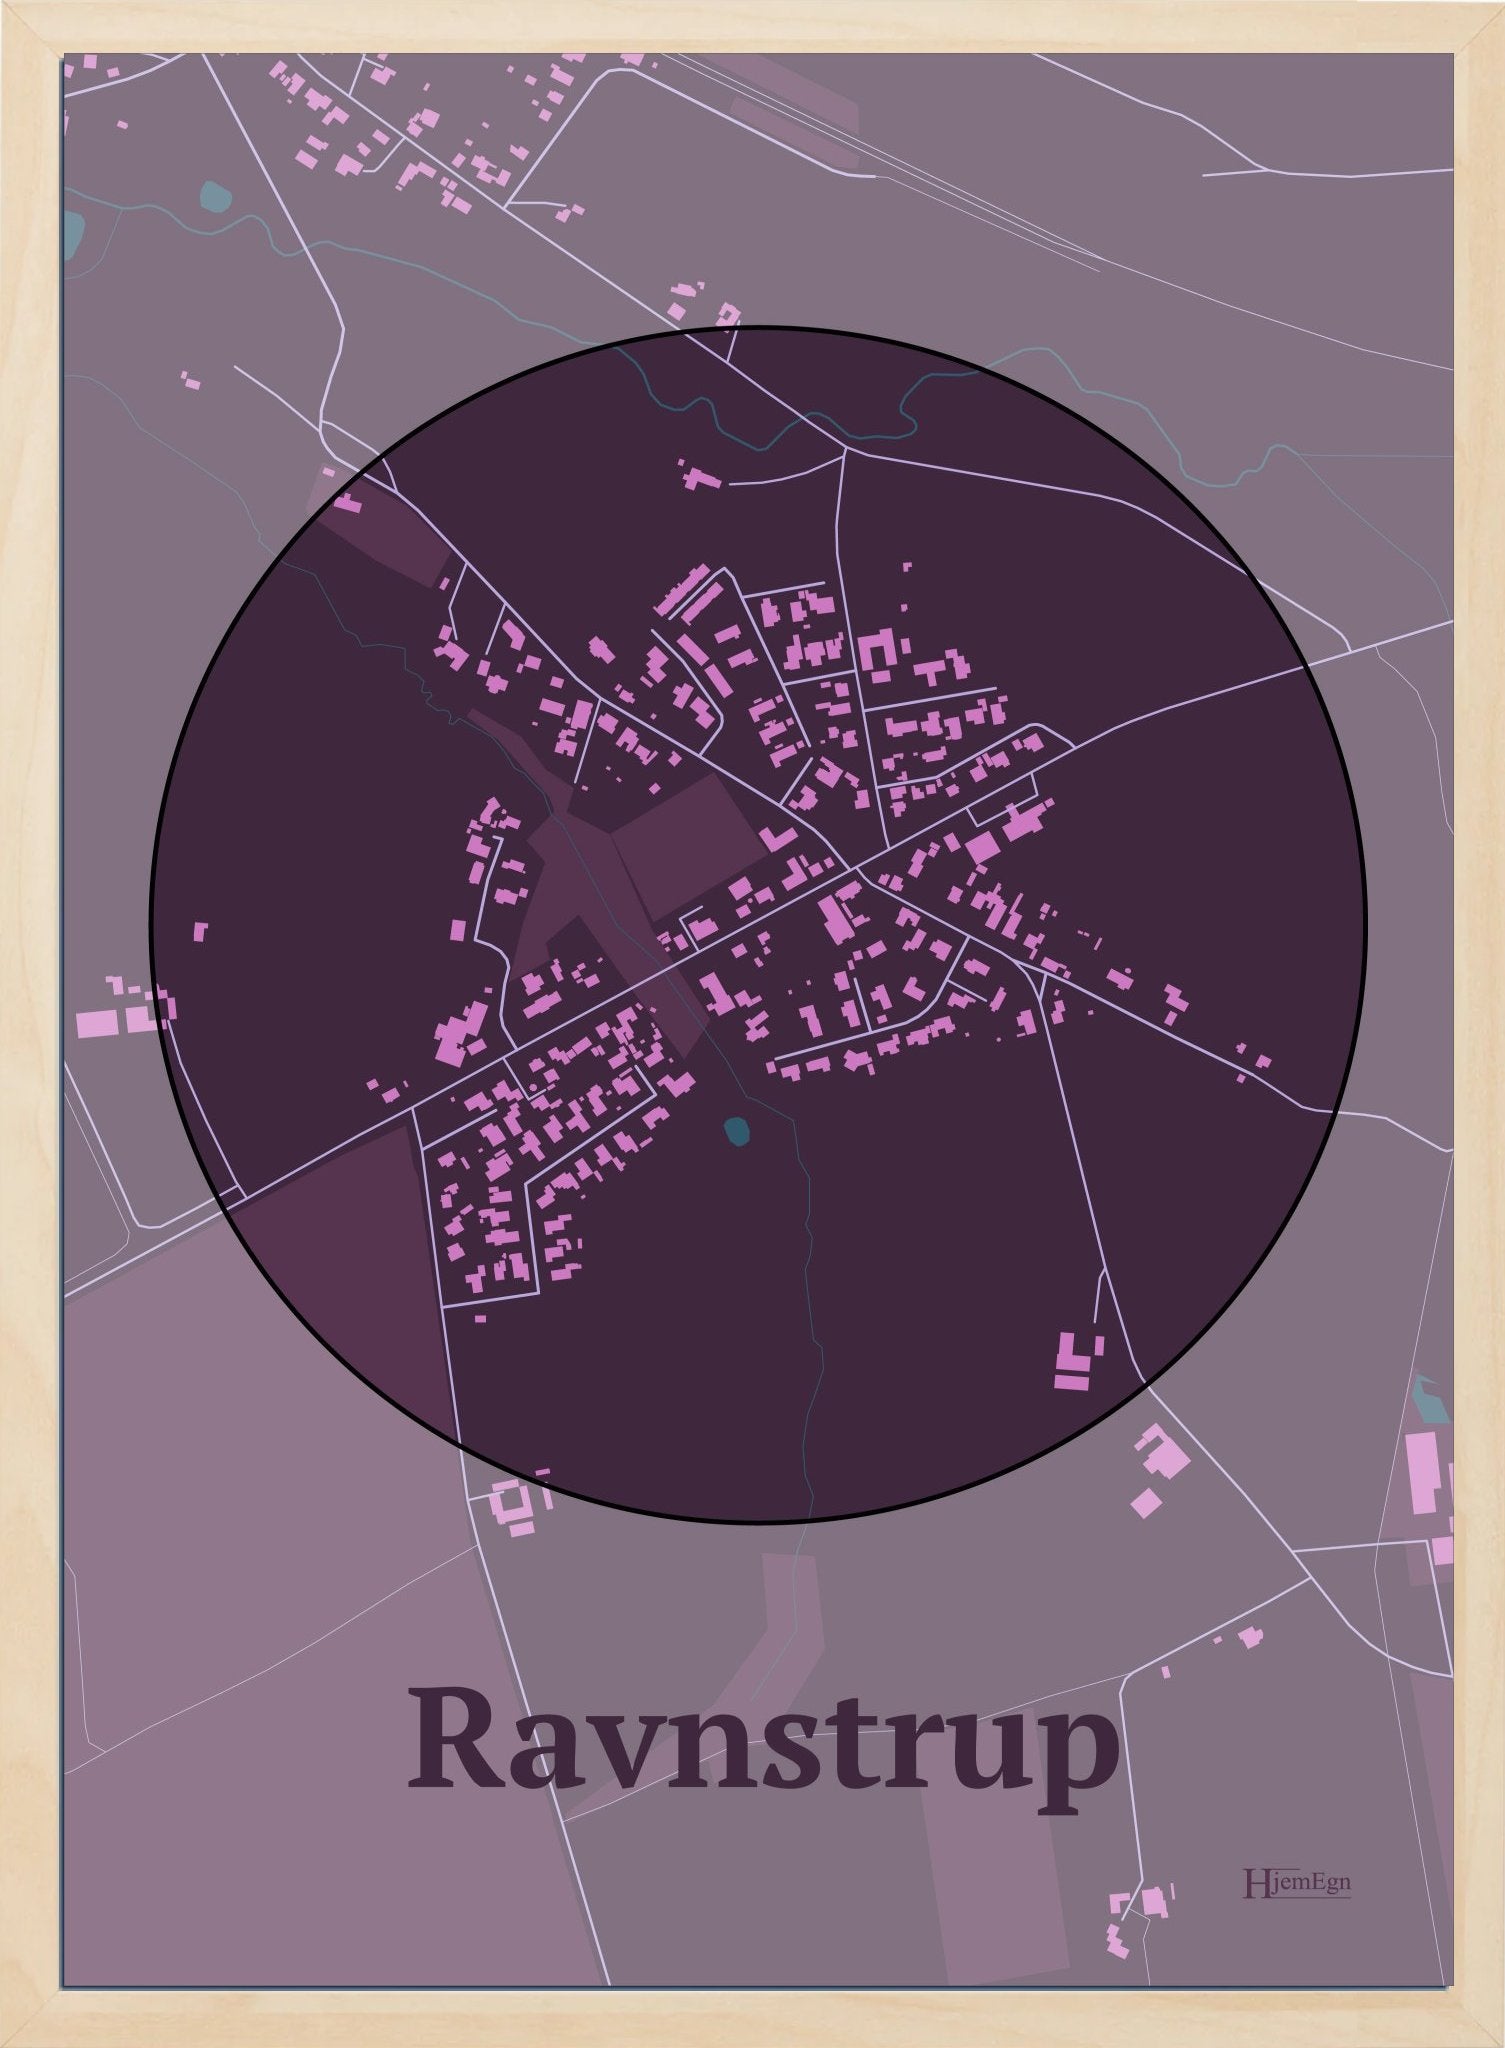 Ravnstrup plakat i farve mørk rød og HjemEgn.dk design centrum. Design bykort for Ravnstrup